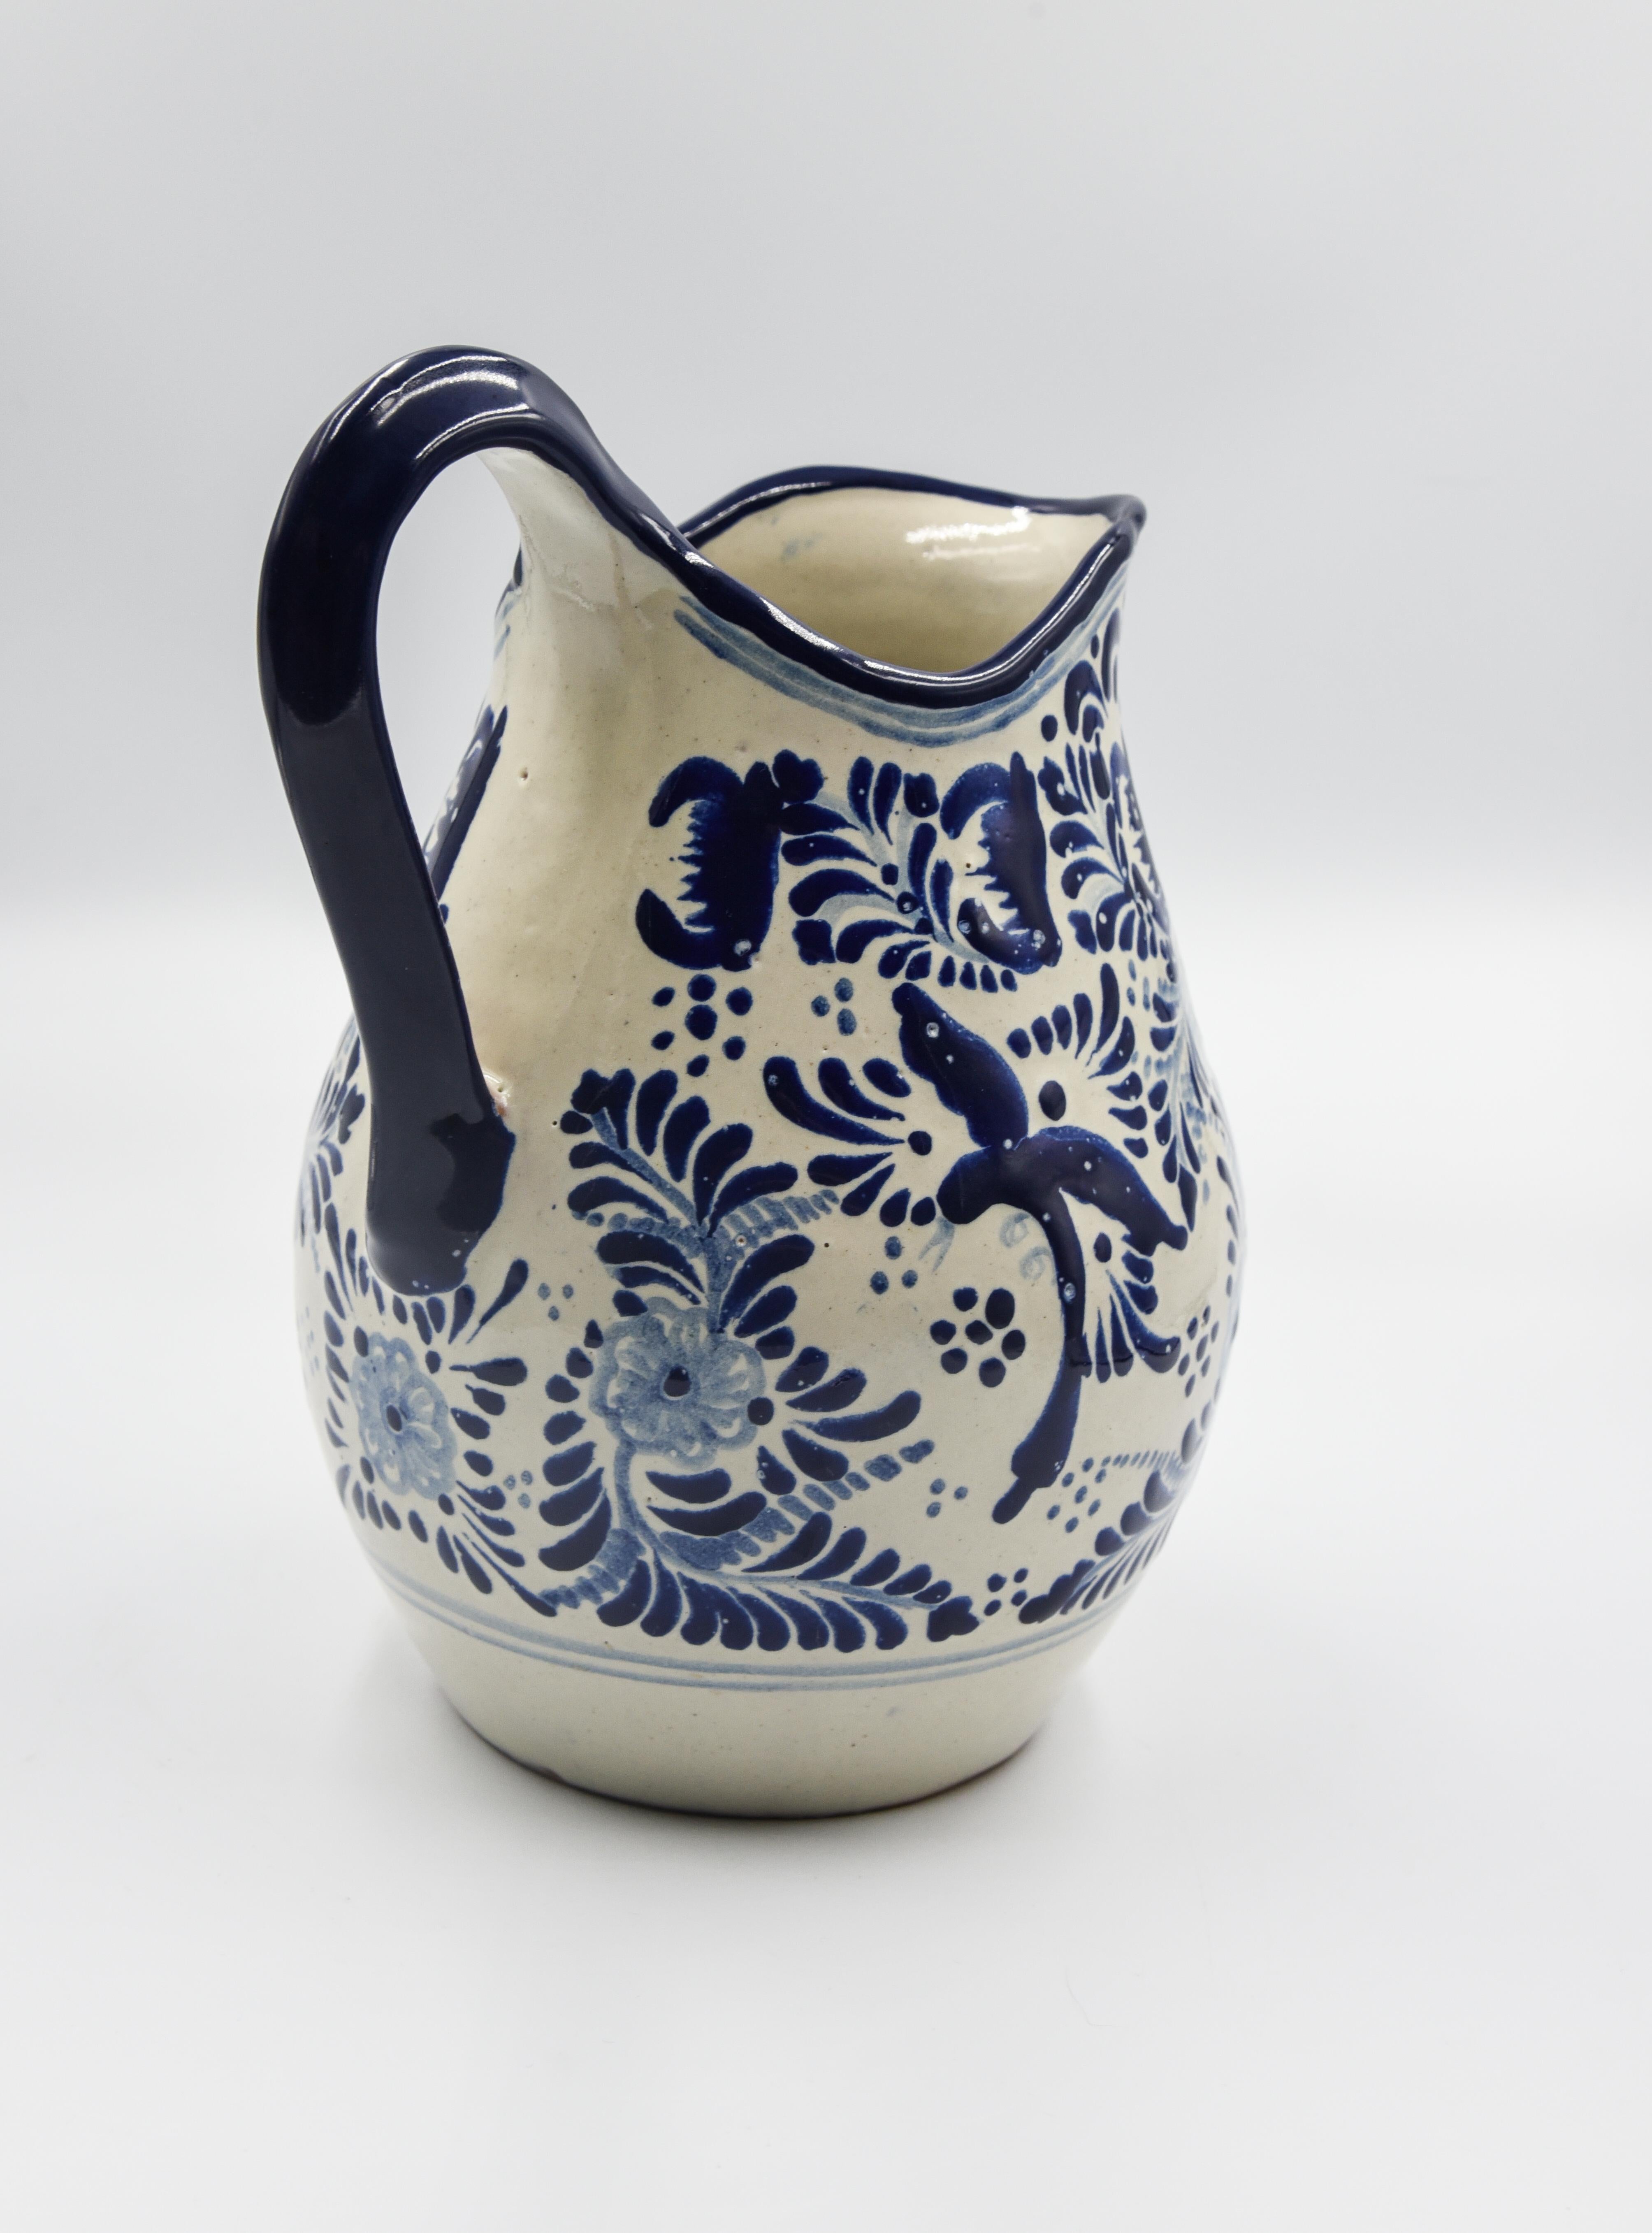 Authentische Talavera Blau Krug Puebla Keramik Traditionelle mexikanische dekorative (Spanisch Kolonial)